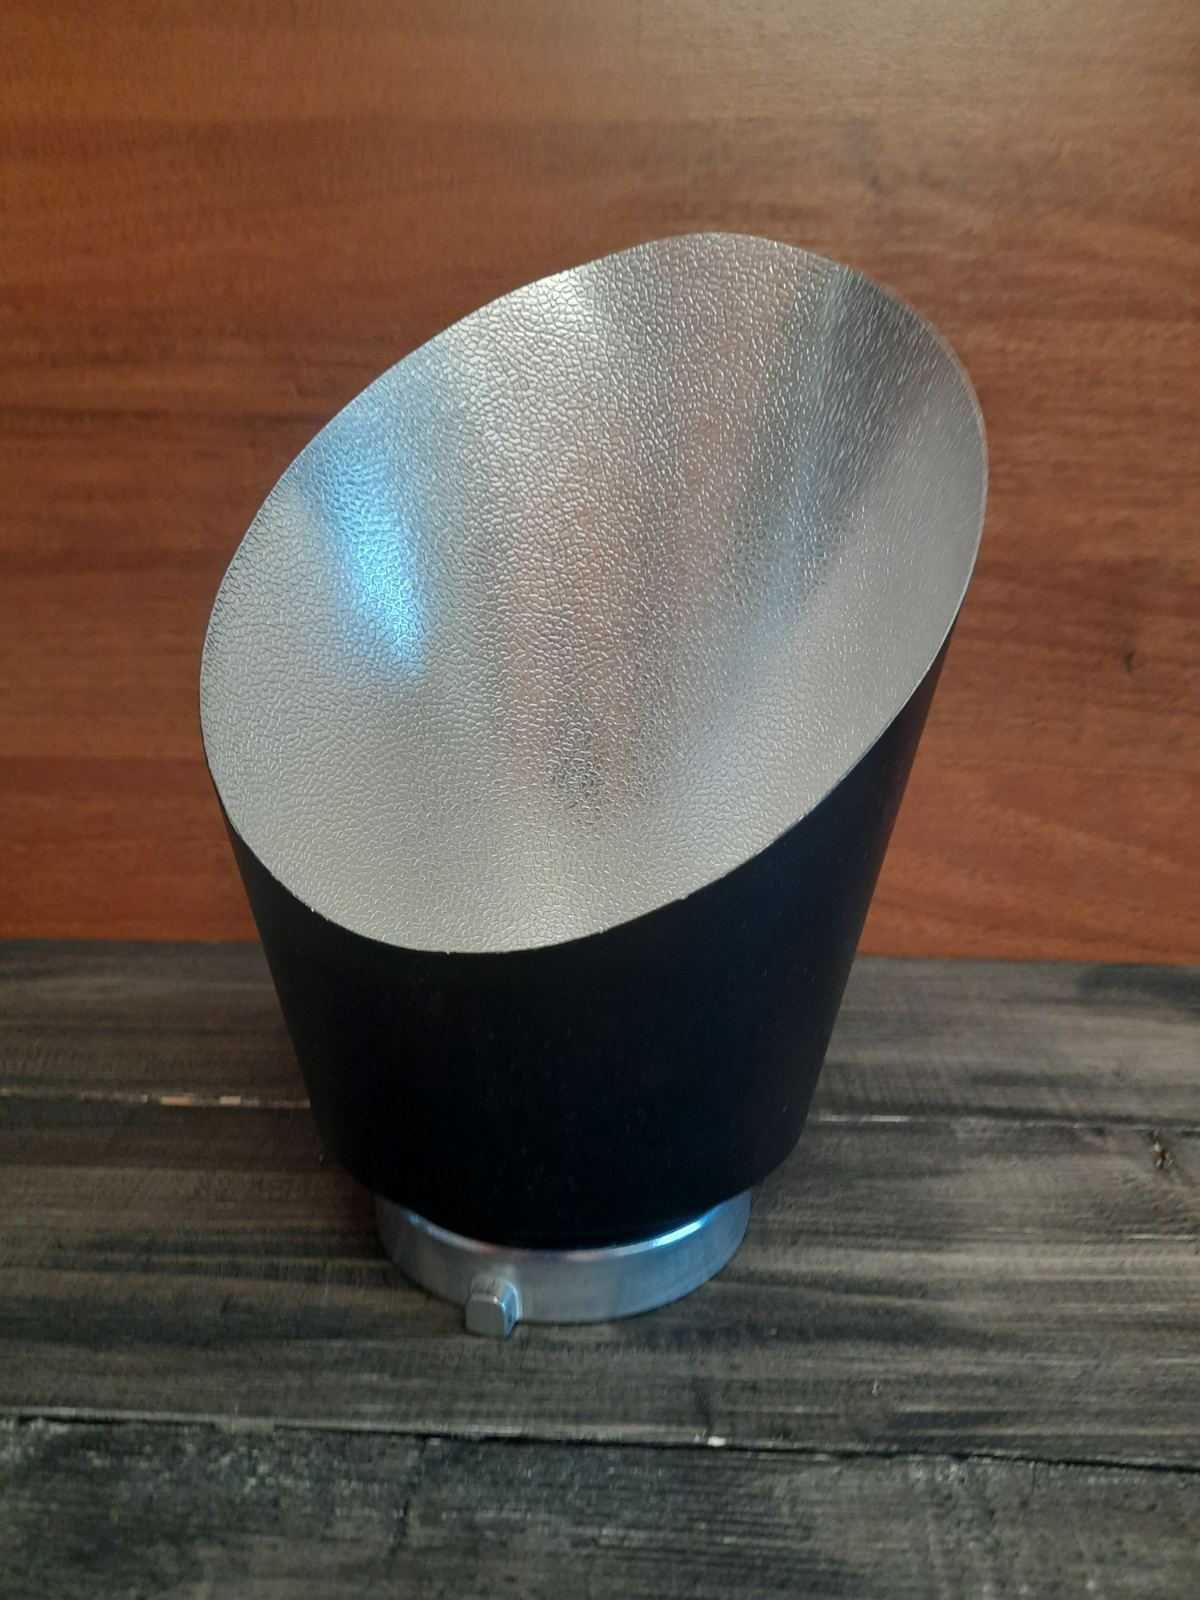 Угловой рефлектор для студийного света с байонетом Боуэнс.